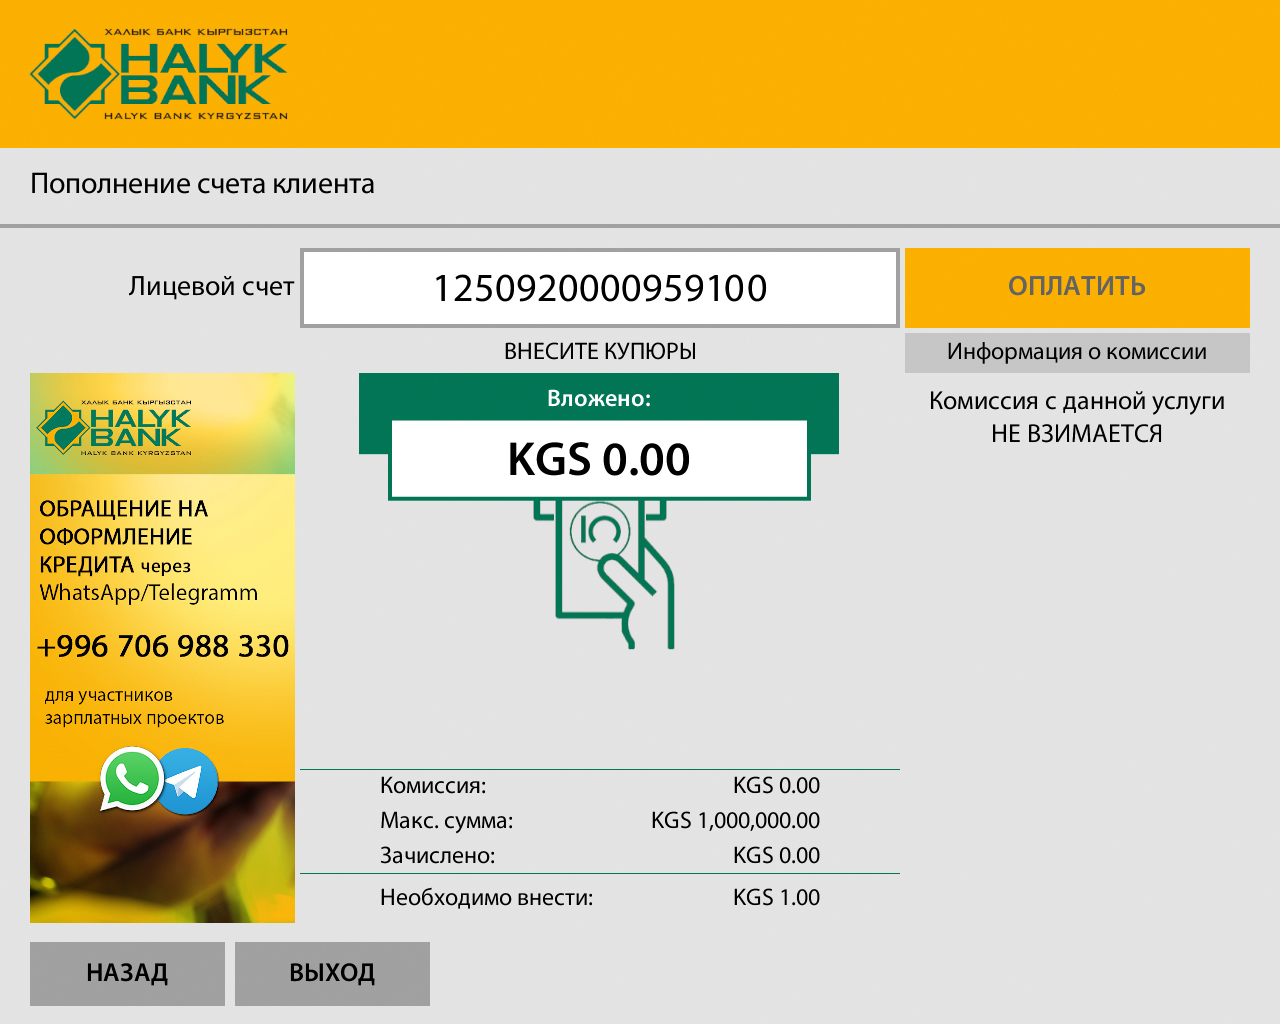 Халык Банк Кыргызстан внедряет ПО для АДМ и платежных терминалов от Soft-logic - рис.3